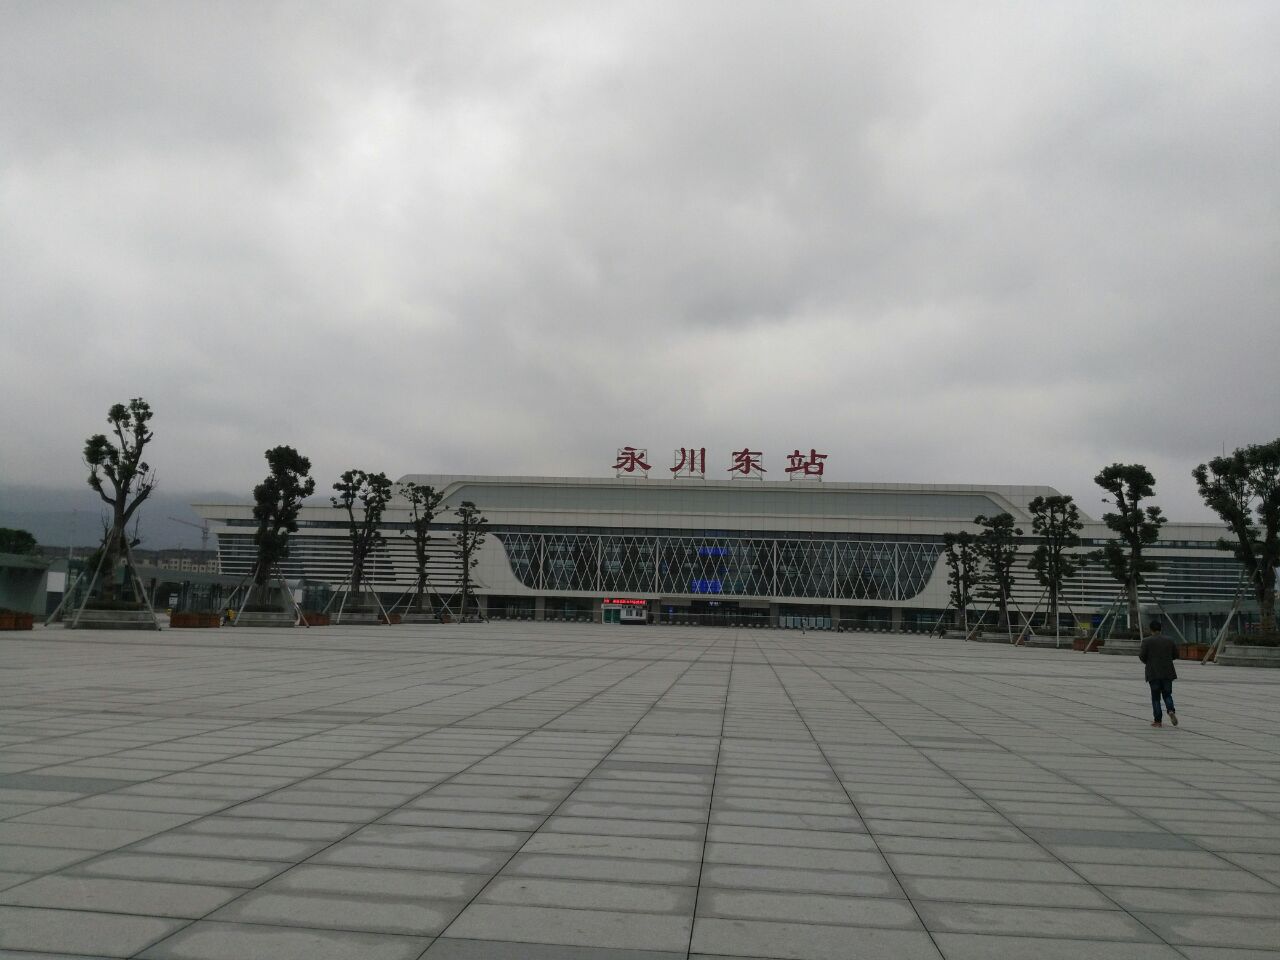 永川火车站特指是老火车站,就是原成渝线运行的常规列车停靠站